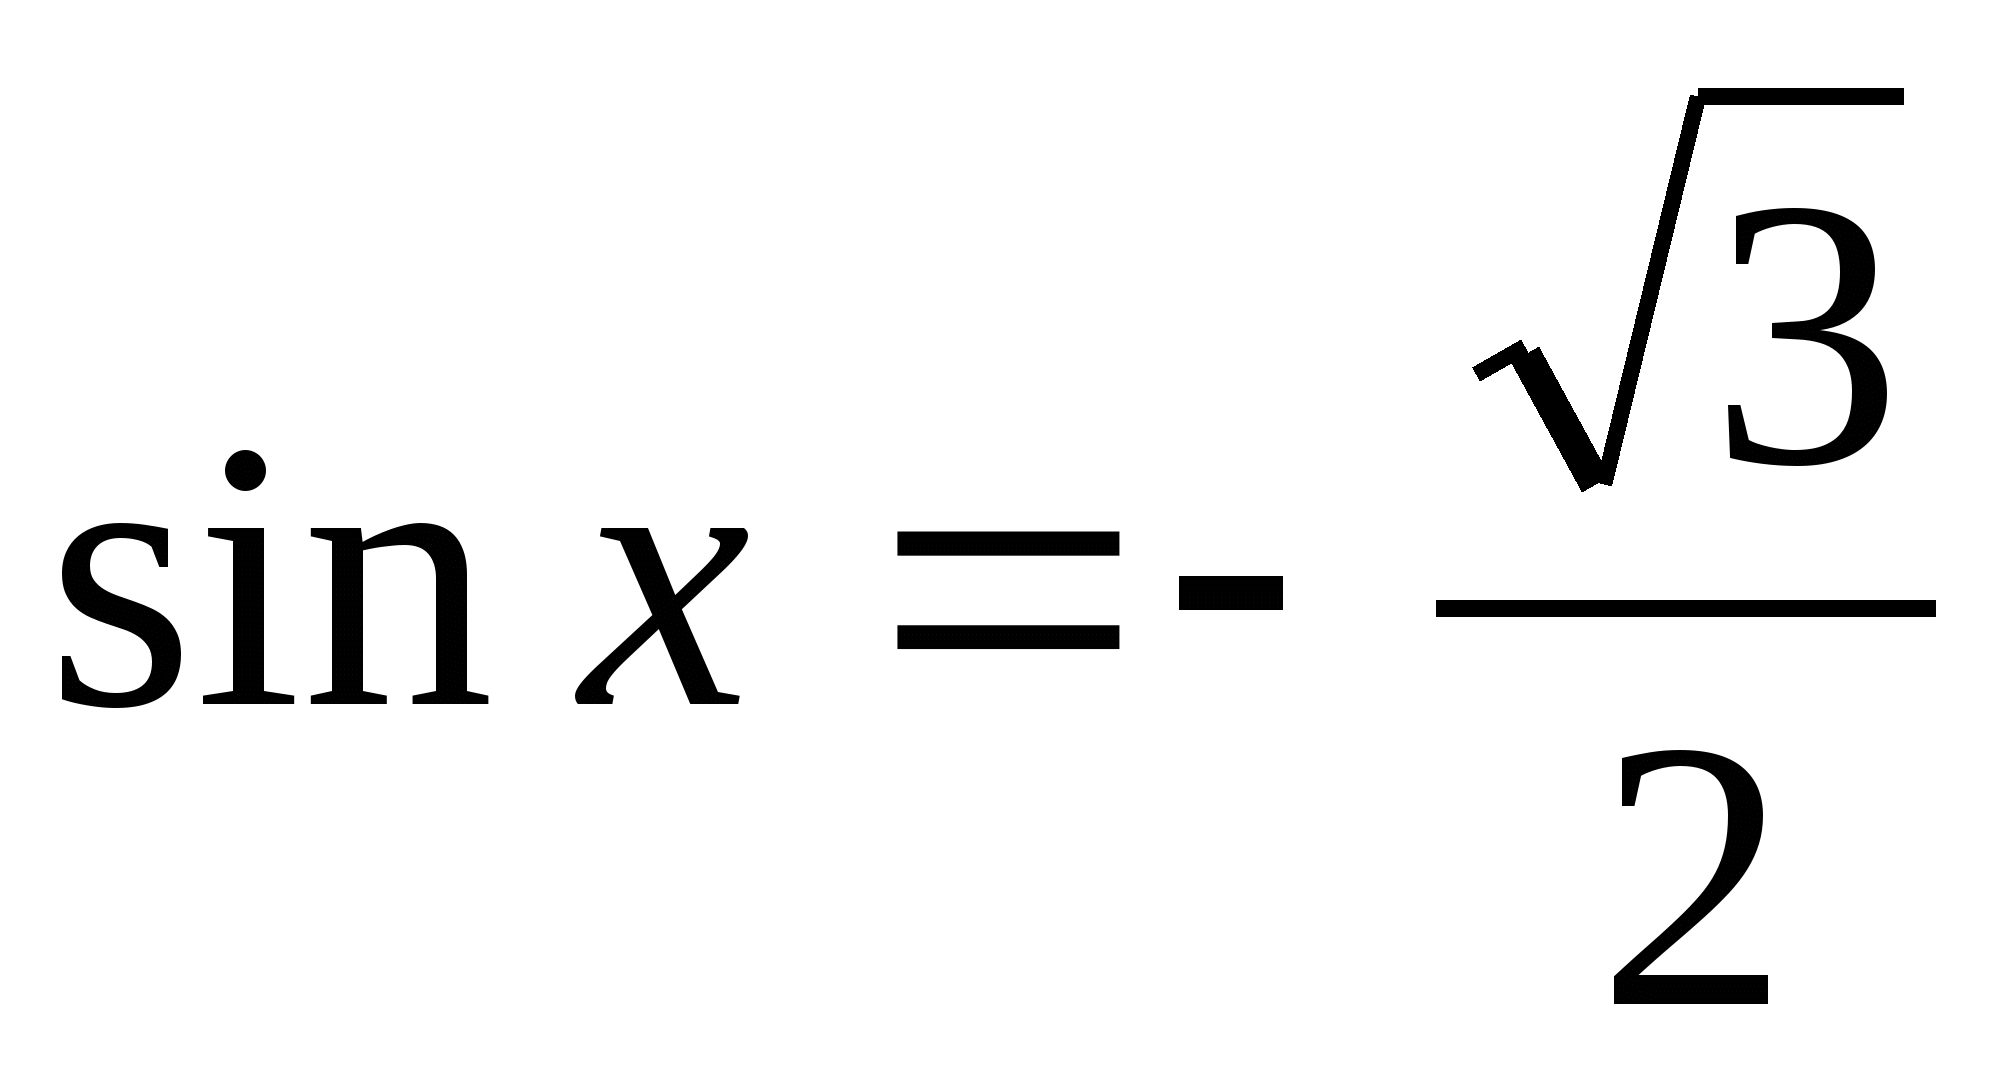 Урок на тему Решение простейших тригонометрических уравнений